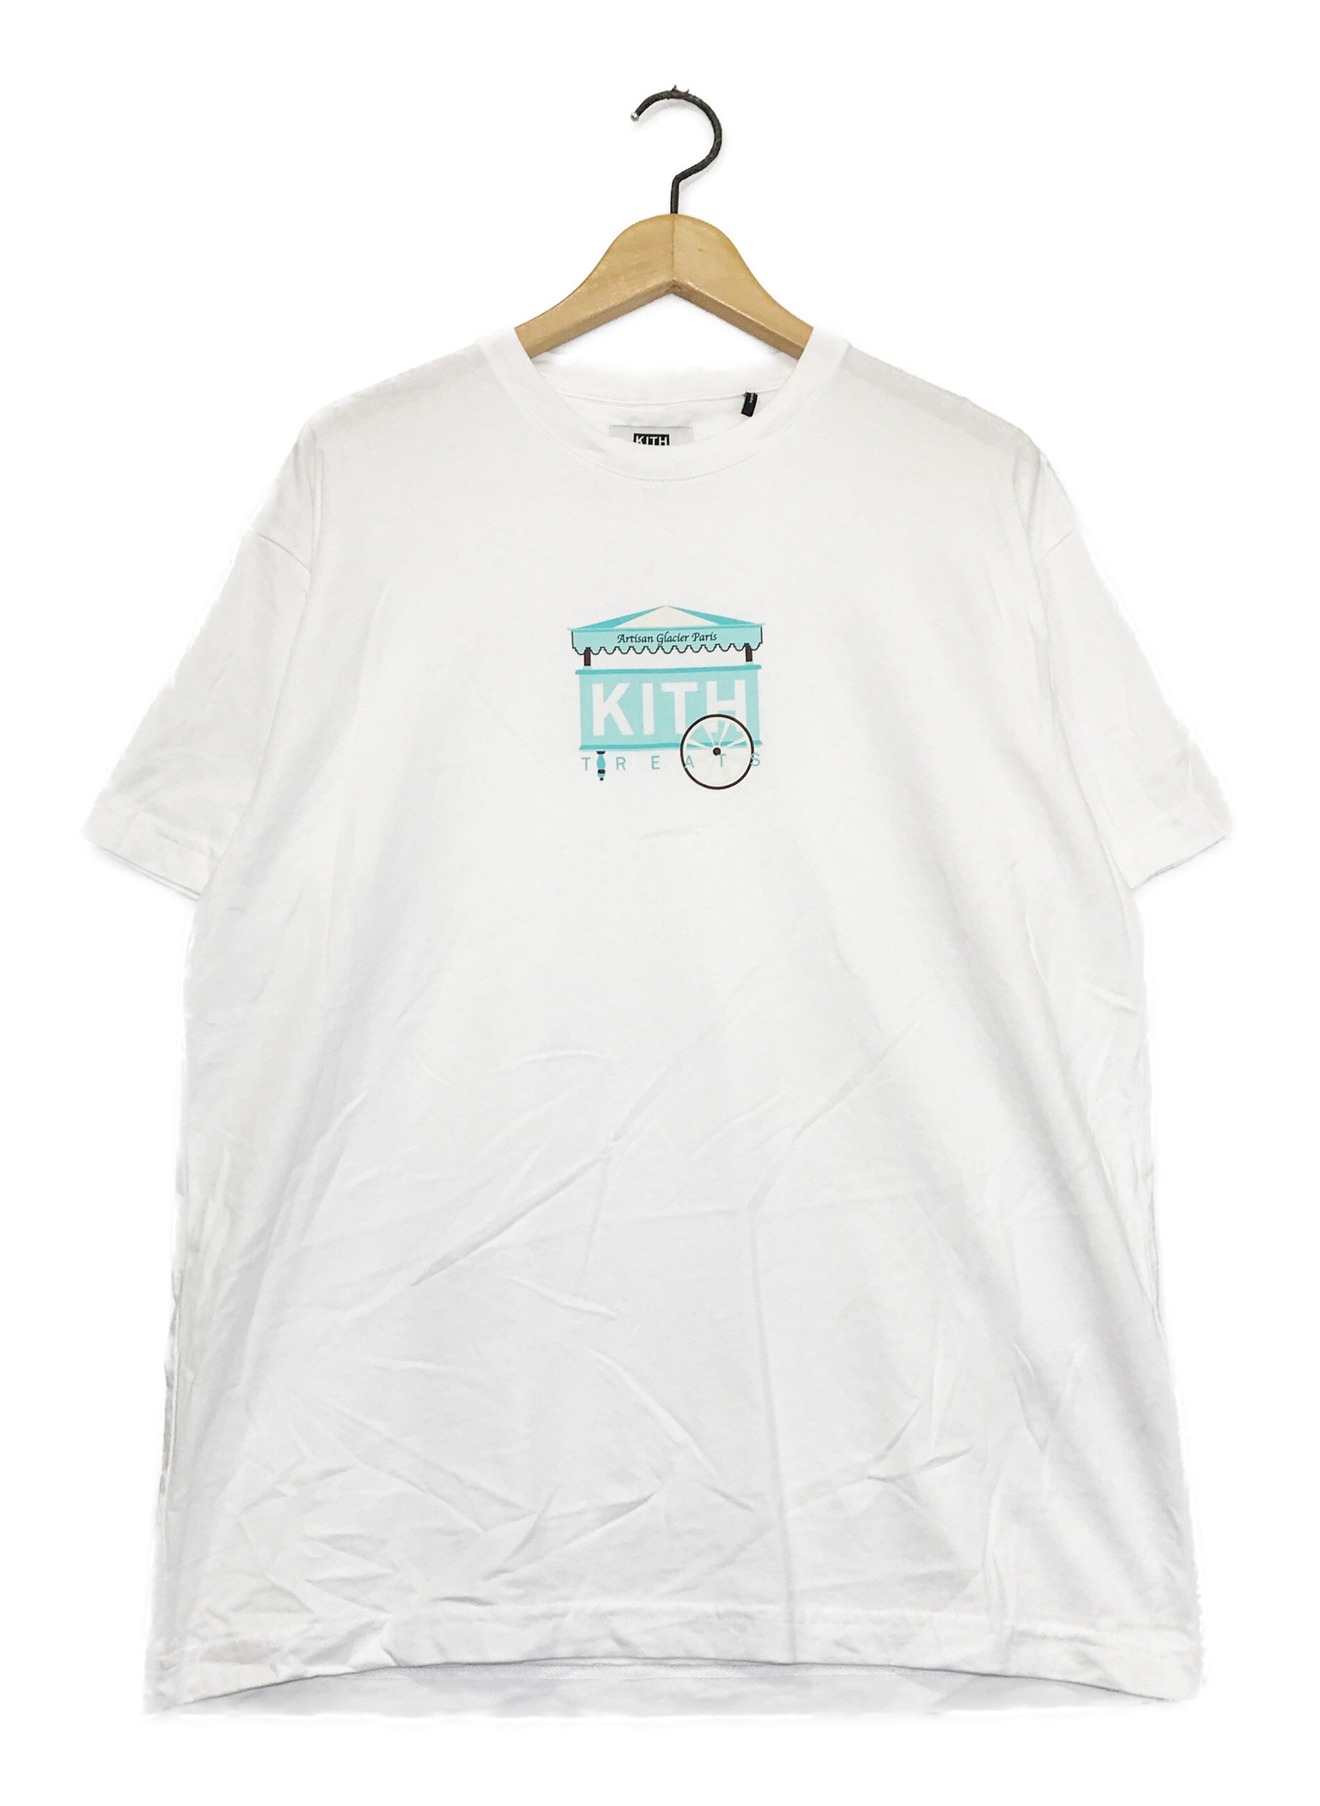 KITH (キス) プリントTシャツ ホワイト サイズ:S